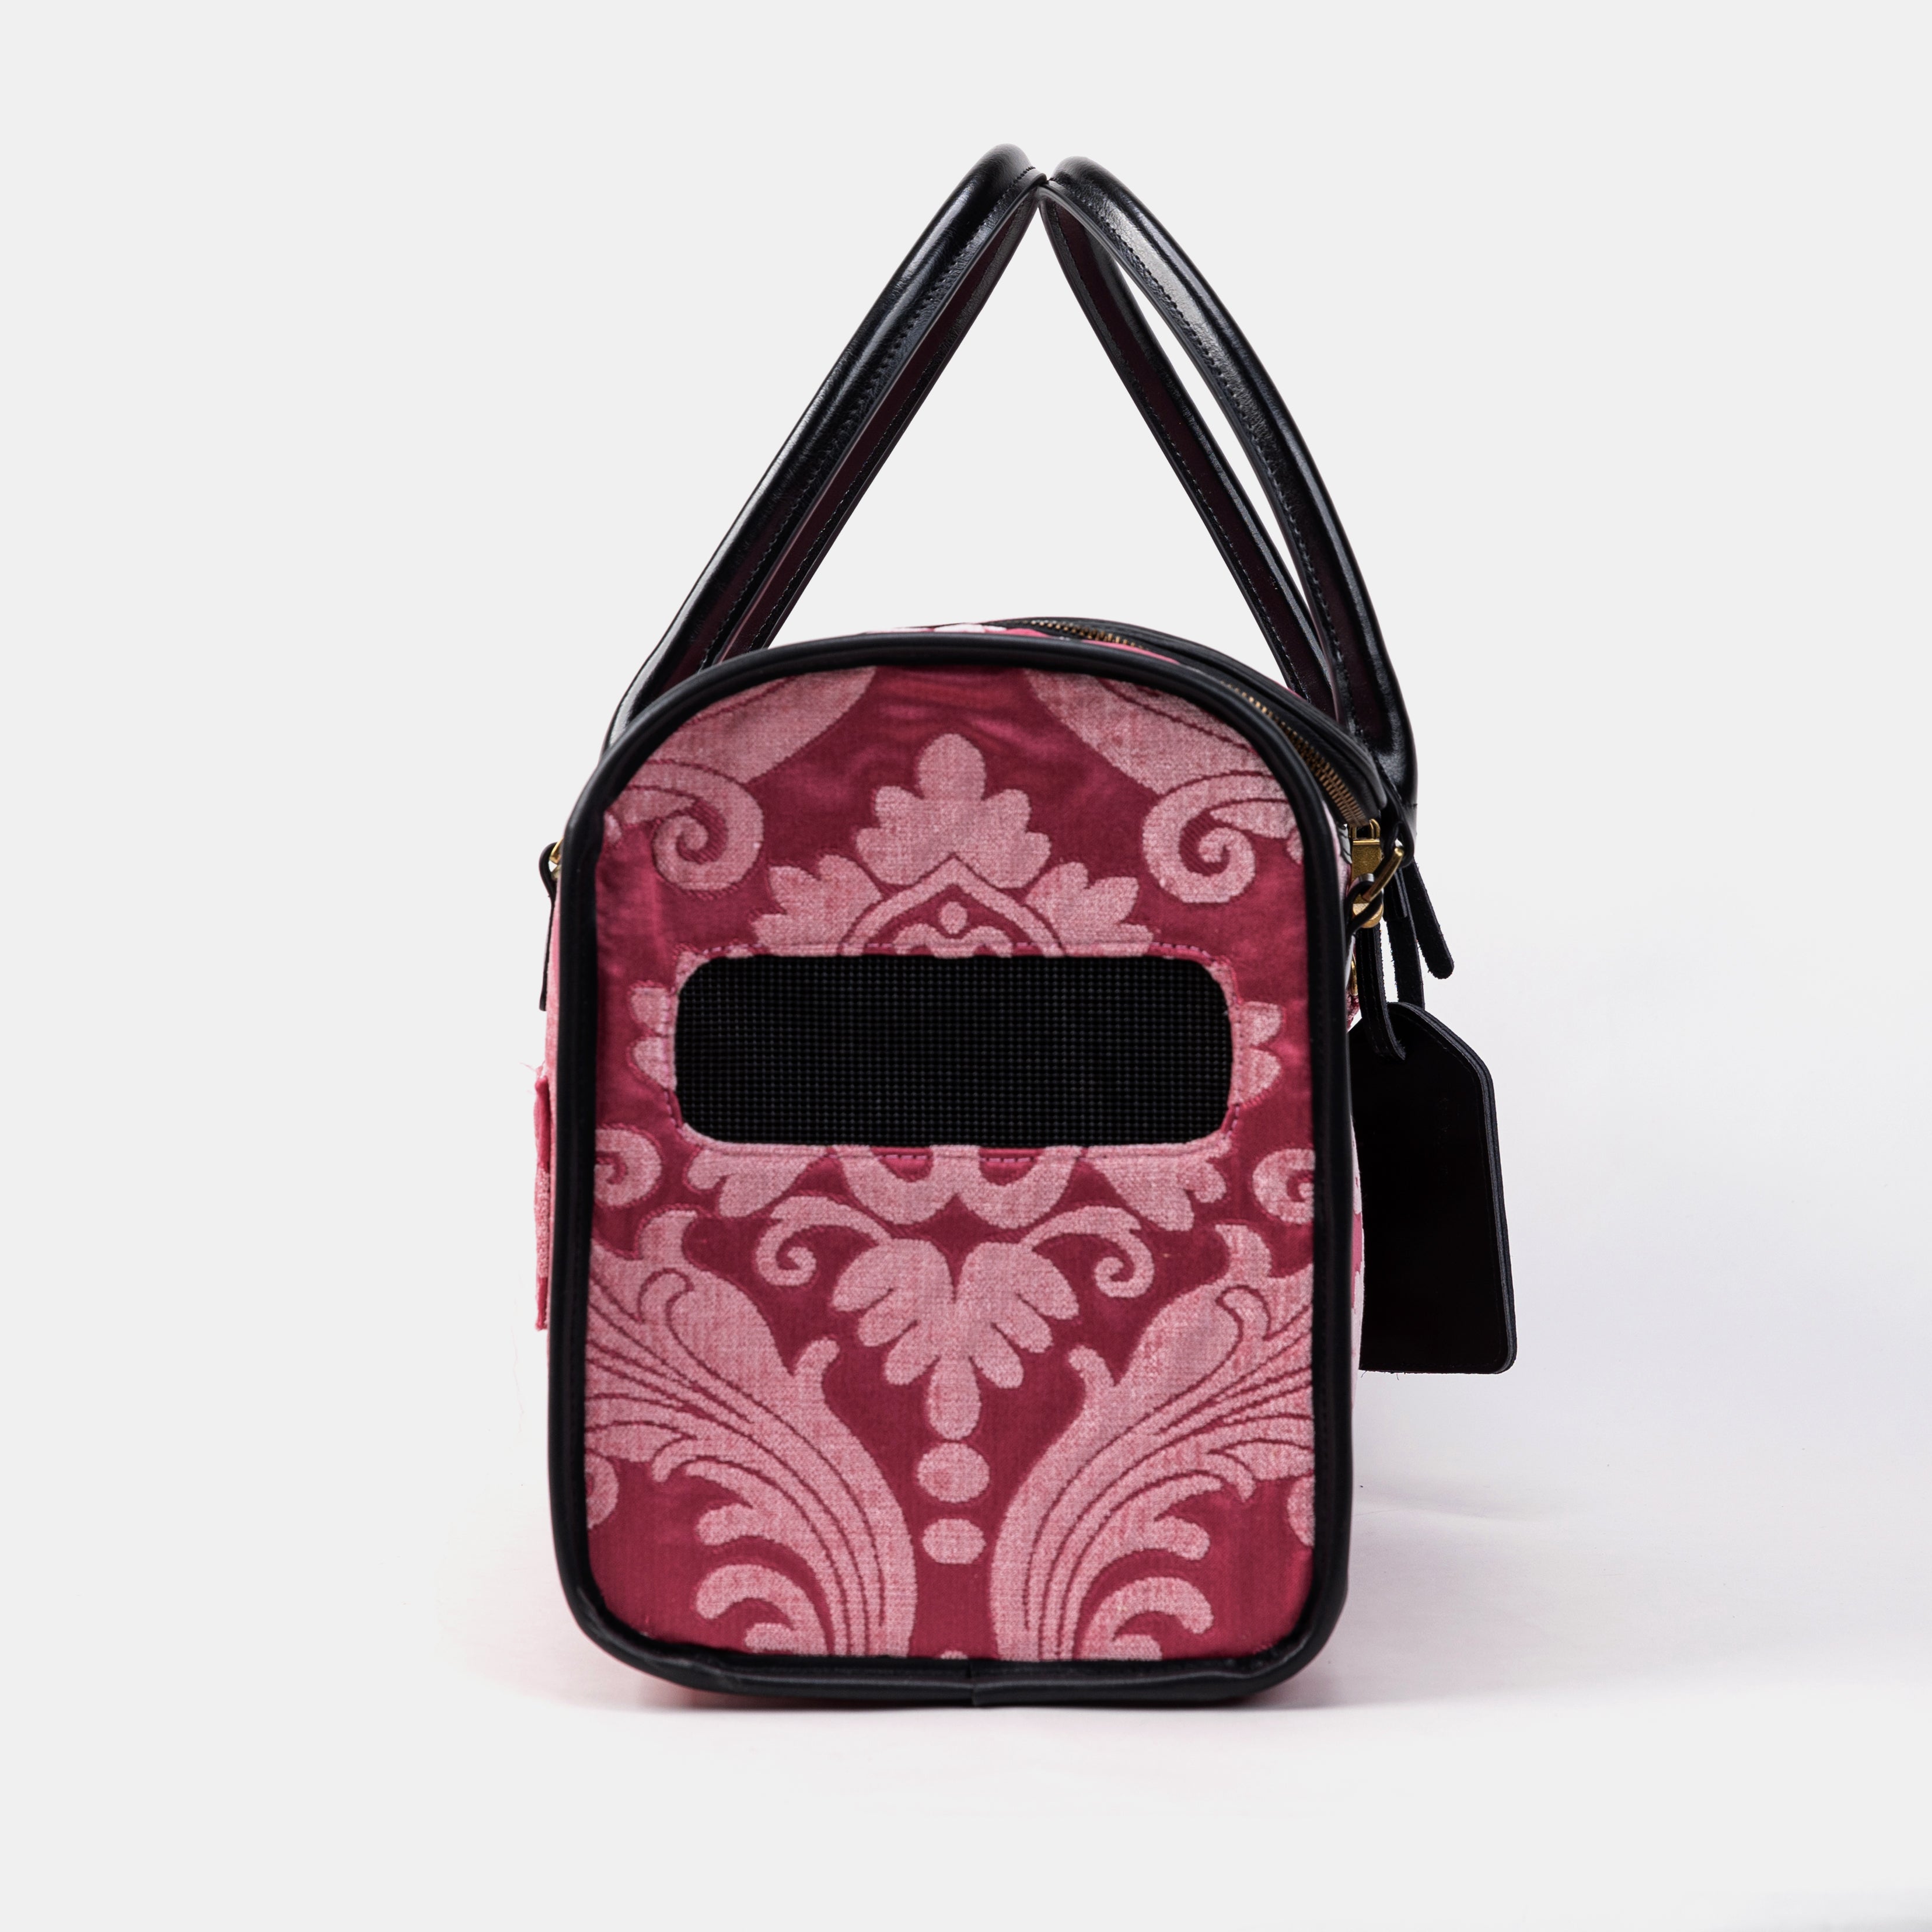 Travel Dog Carrier Bag Queen Rose  PinkSide Mesh